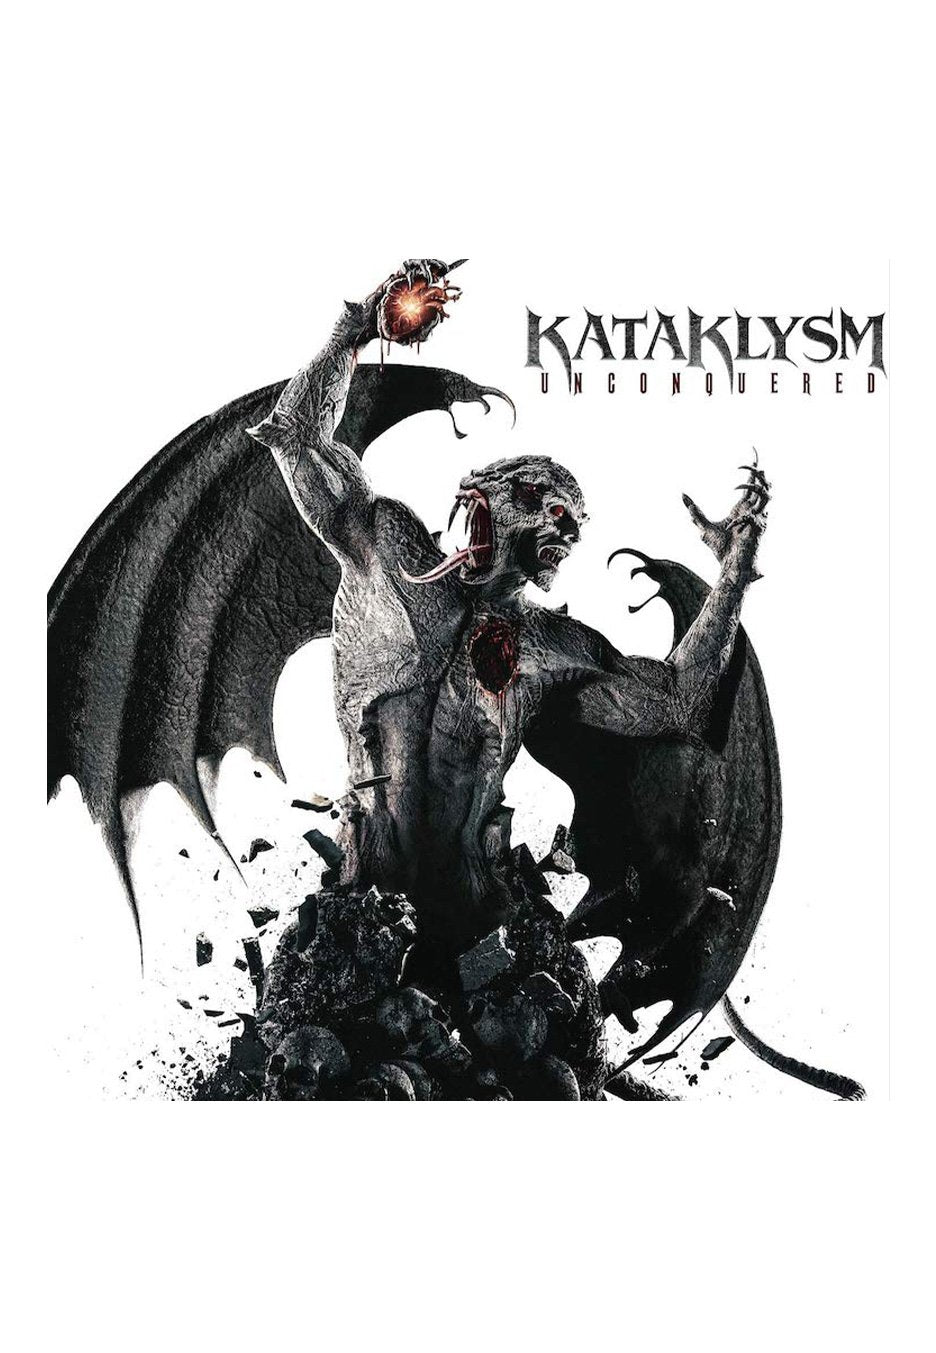 Kataklysm - Unconquered Ltd. Red & Black - Splattered Vinyl